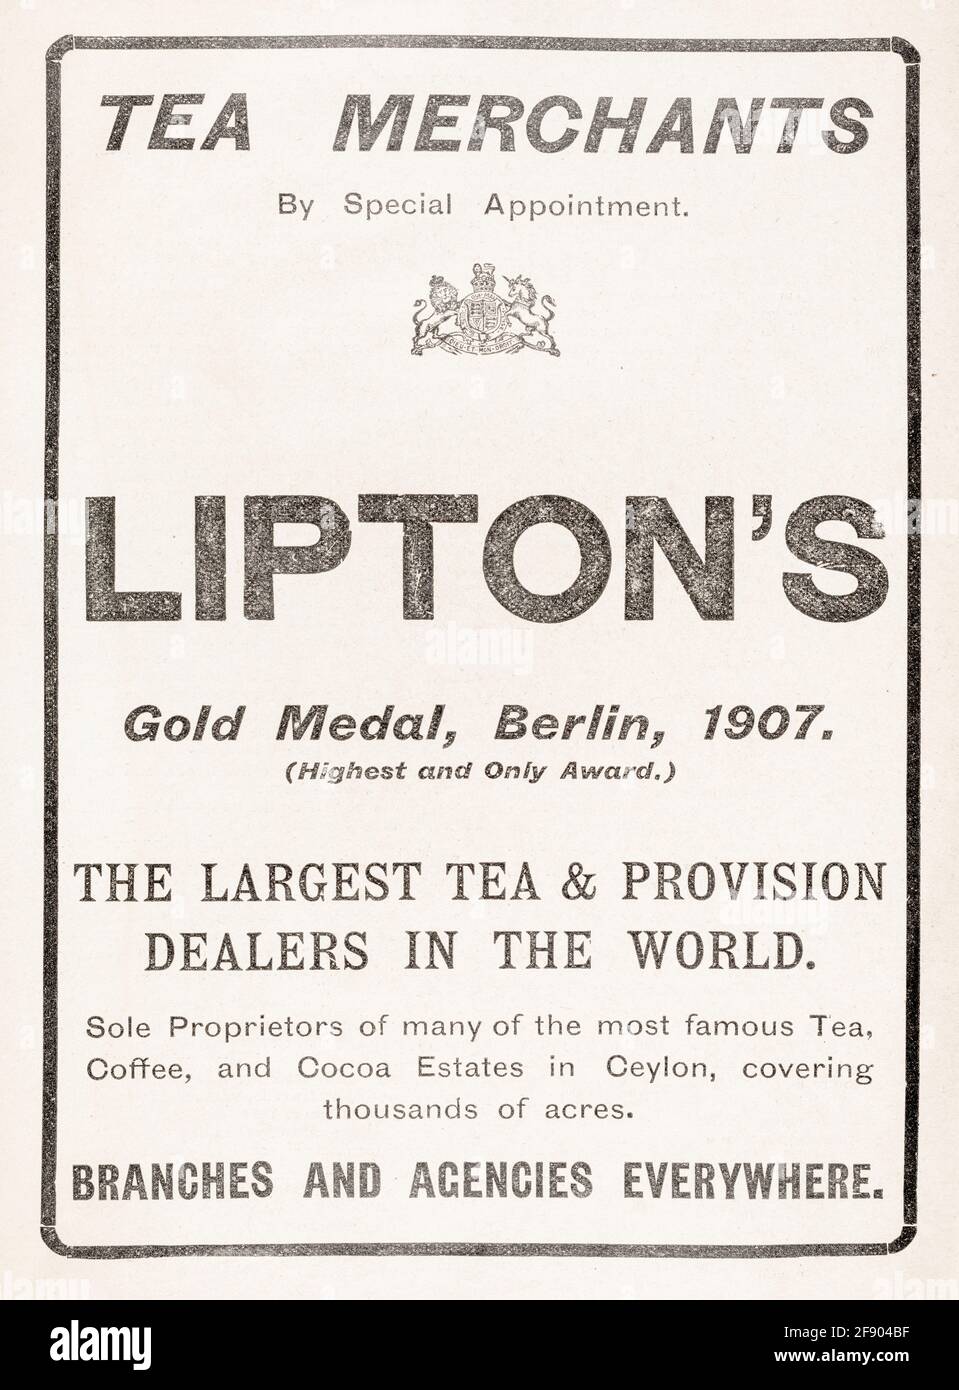 Vecchia carta da giornale vittoriana Lipton's Tea pubblicità dal 1907 - standard pre pubblicità. Pubblicità di vecchie bevande, vecchi marchi di tè, attività di tè Foto Stock